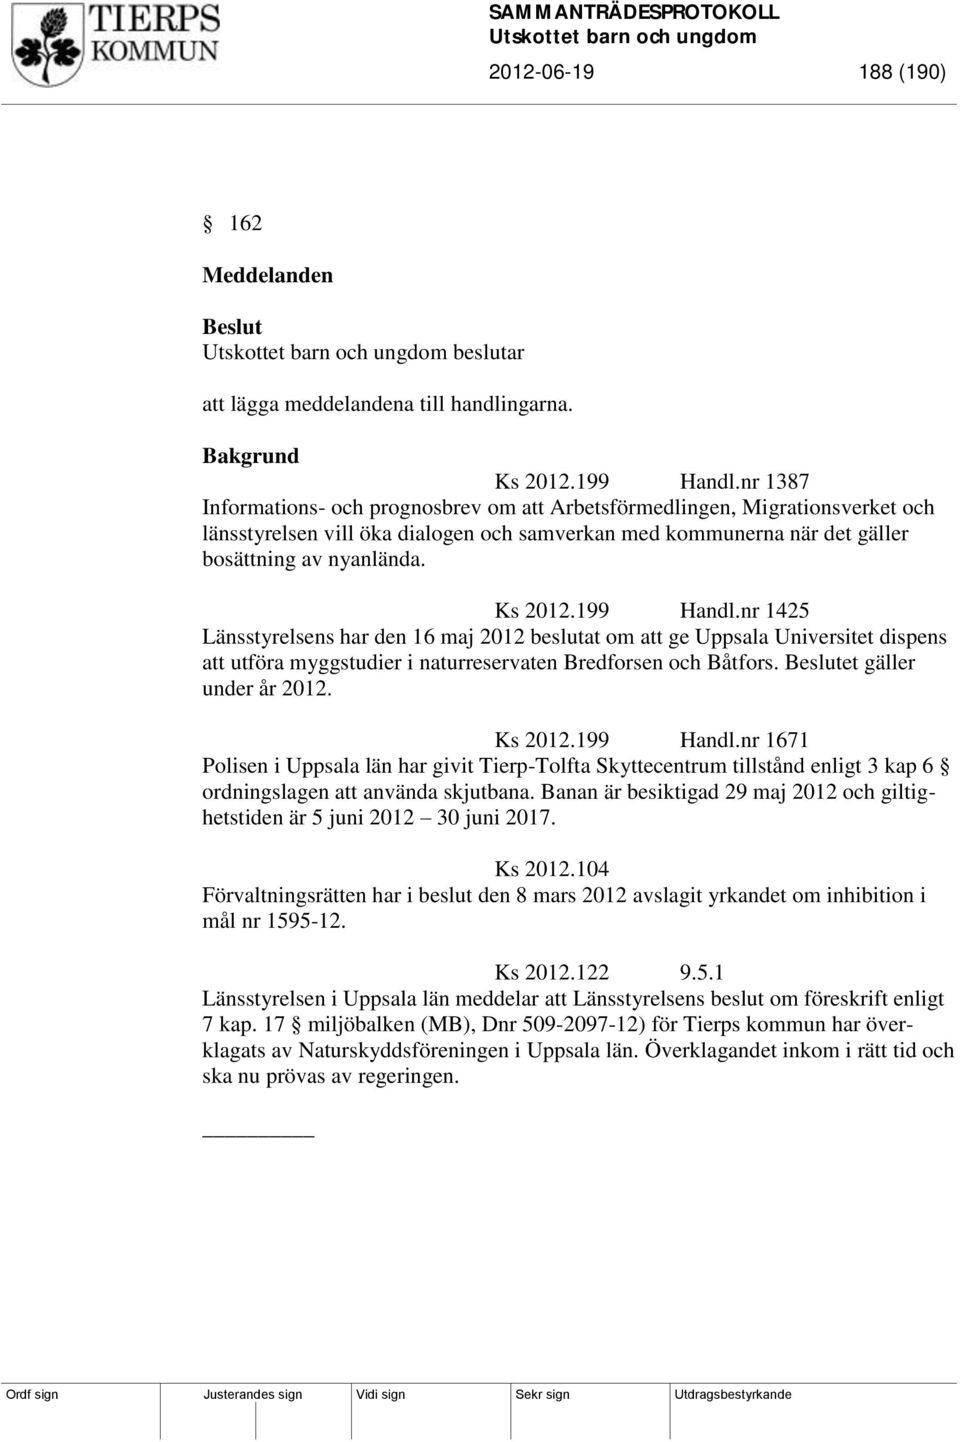 199 Handl.nr 1425 Länsstyrelsens har den 16 maj 2012 beslutat om att ge Uppsala Universitet dispens att utföra myggstudier i naturreservaten Bredforsen och Båtfors. et gäller under år 2012. Ks 2012.